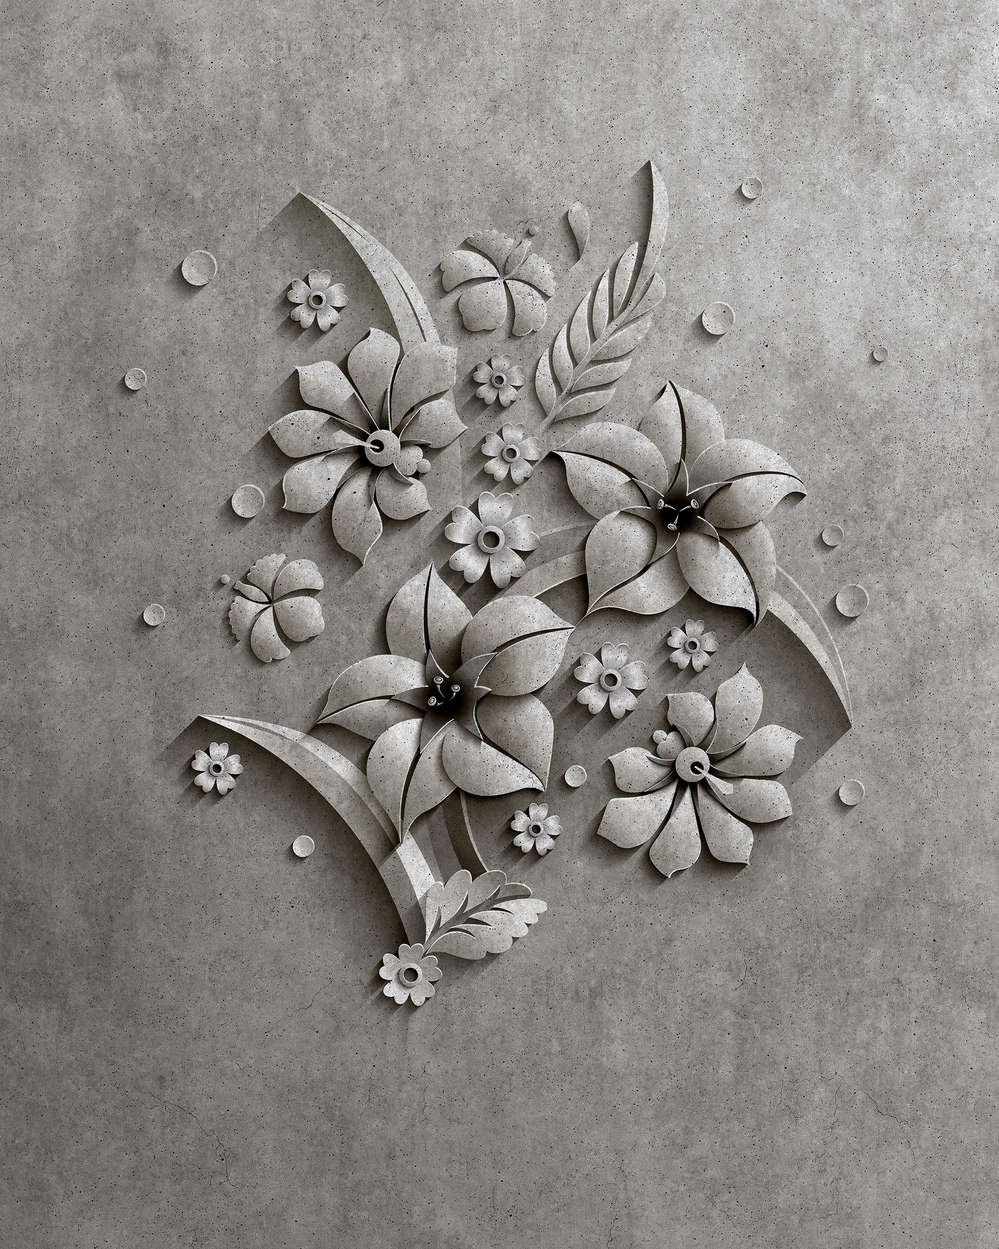             Rilievo 1 - Fotomurali in struttura di cemento di un fiore in rilievo - Grigio, Nero | Vello liscio opaco
        